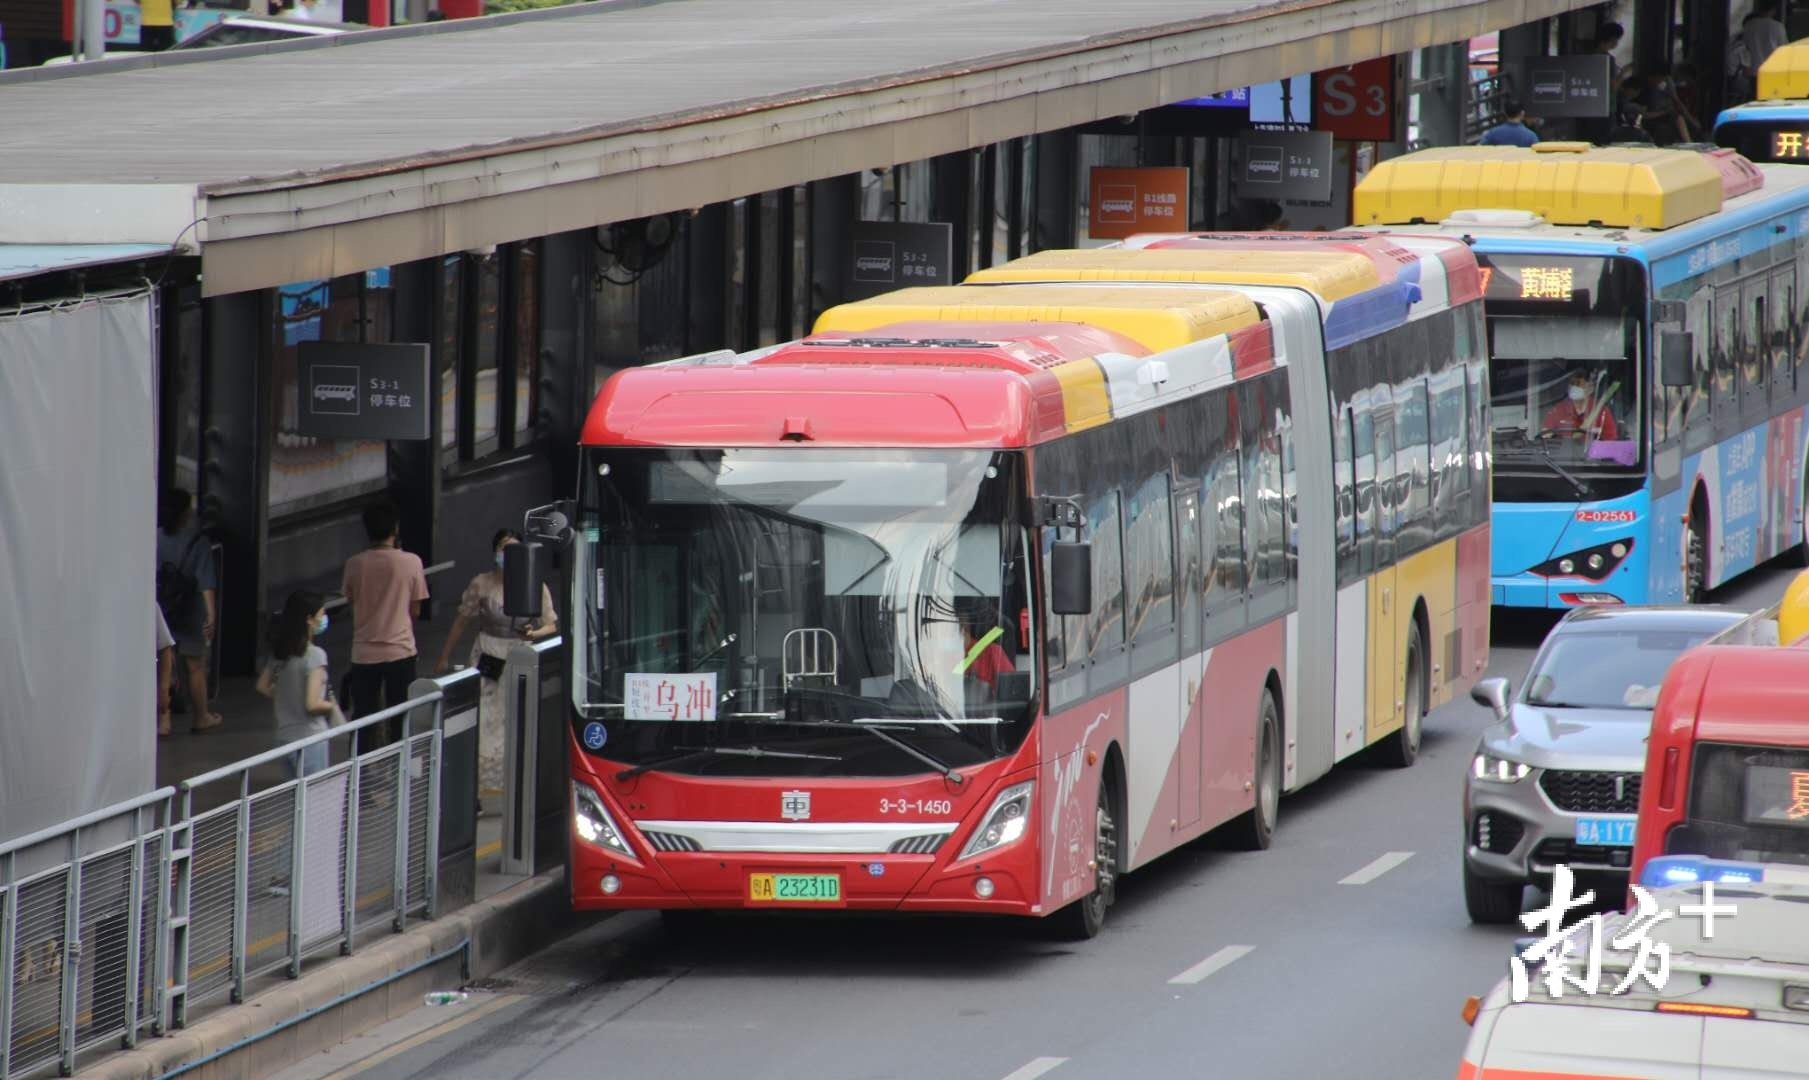 深圳旅游观光巴士来了！双层全景天窗美极了！_深圳新闻网